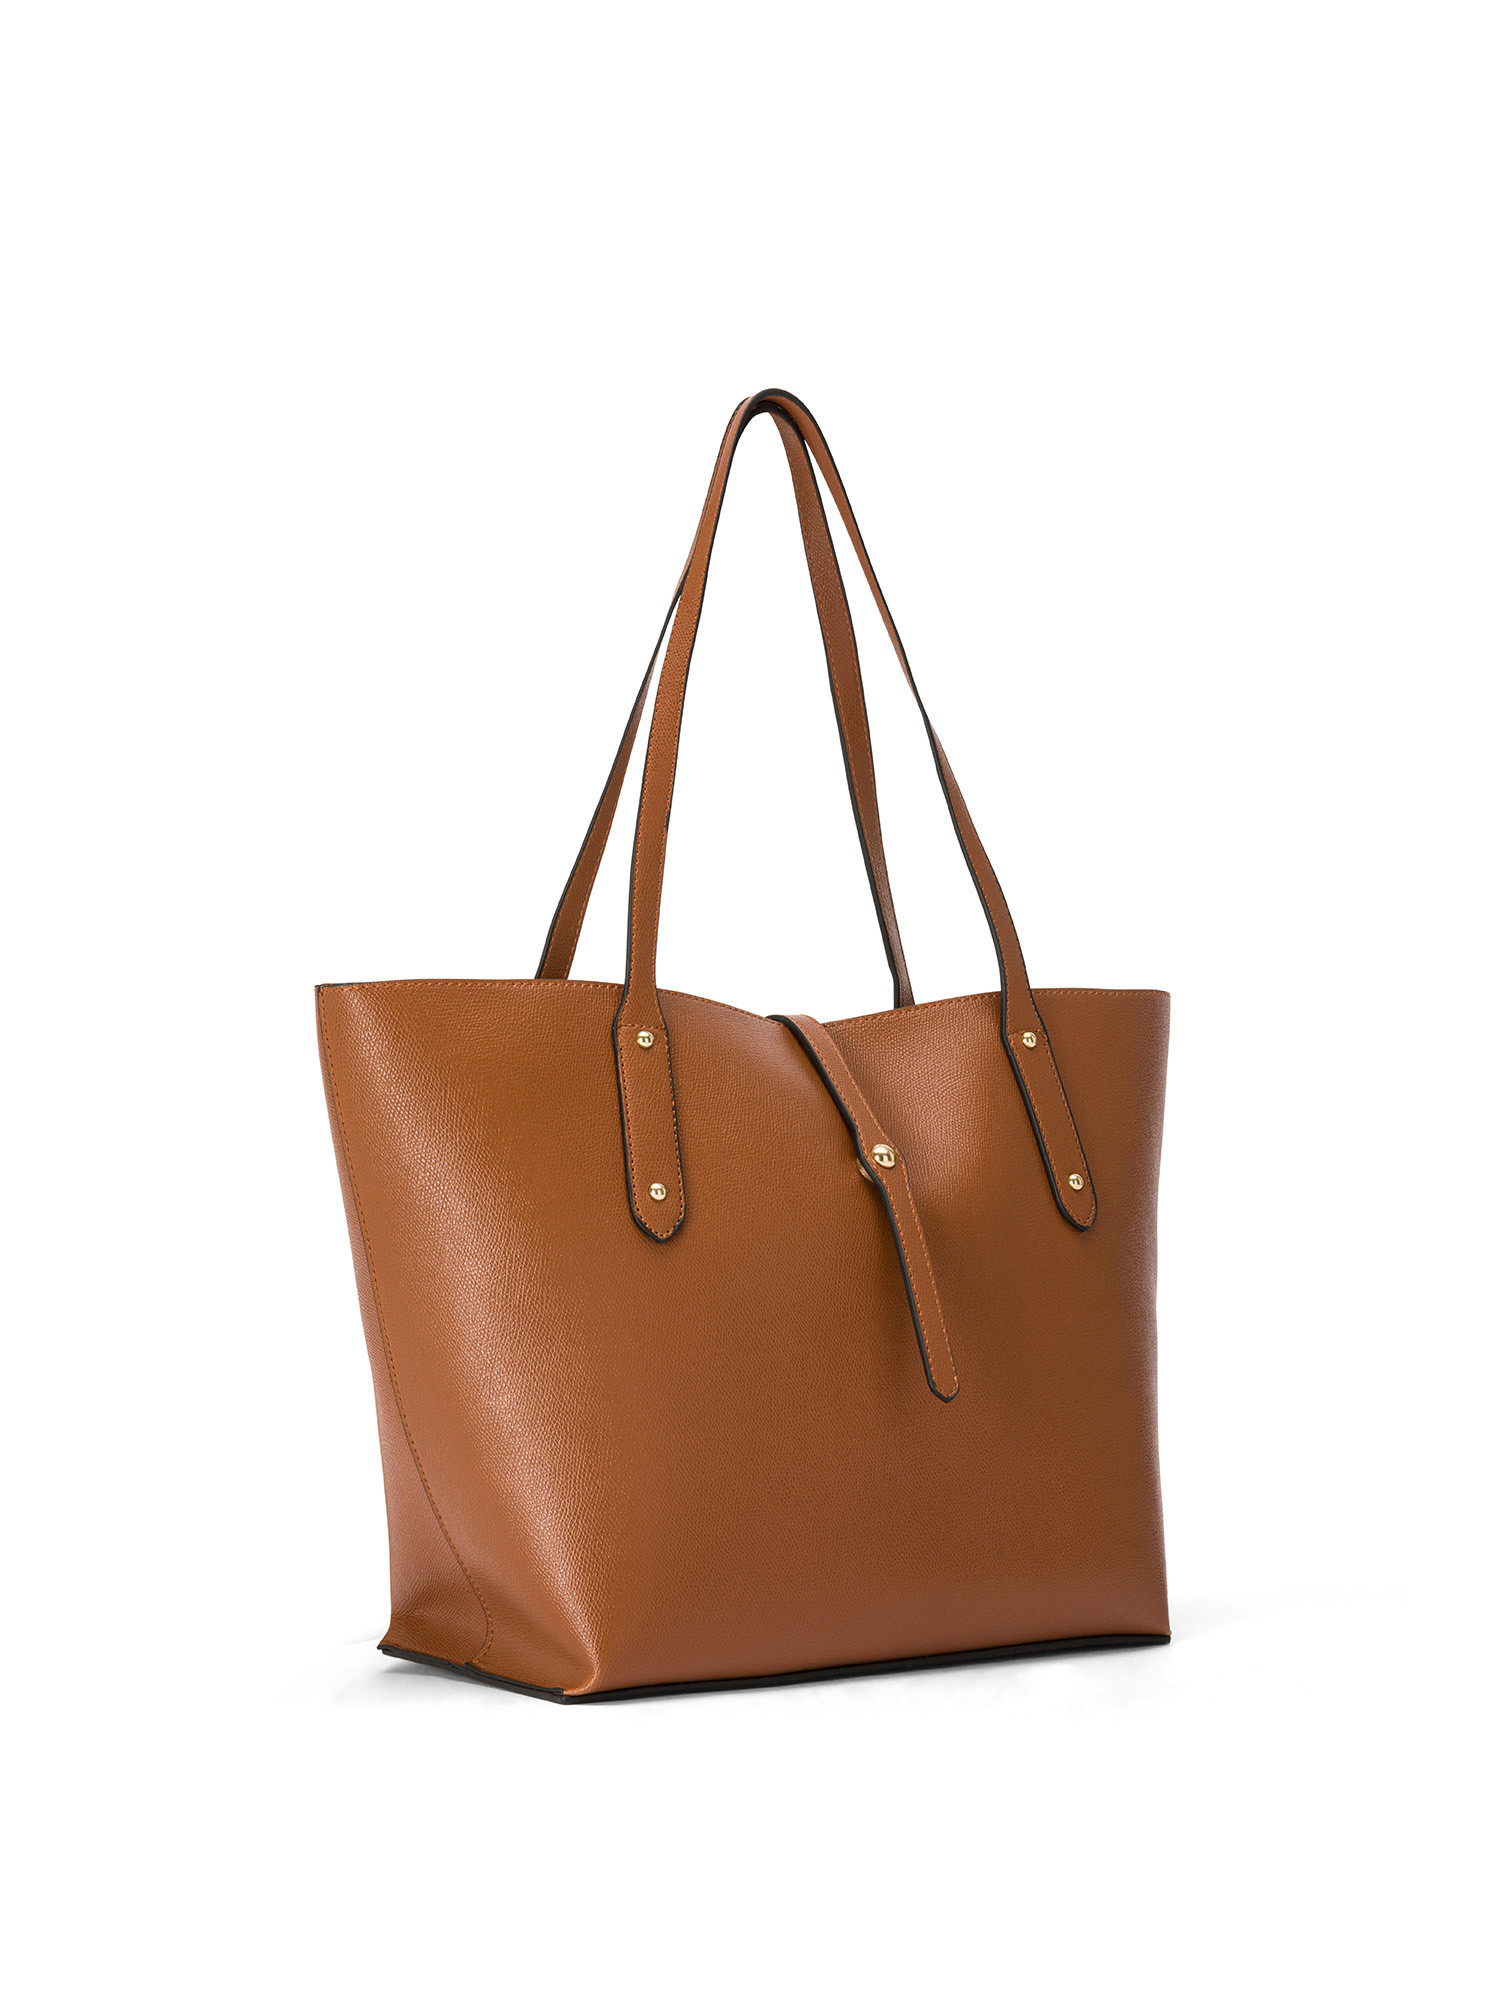 Koan - Shopping bag, Brown, large image number 1